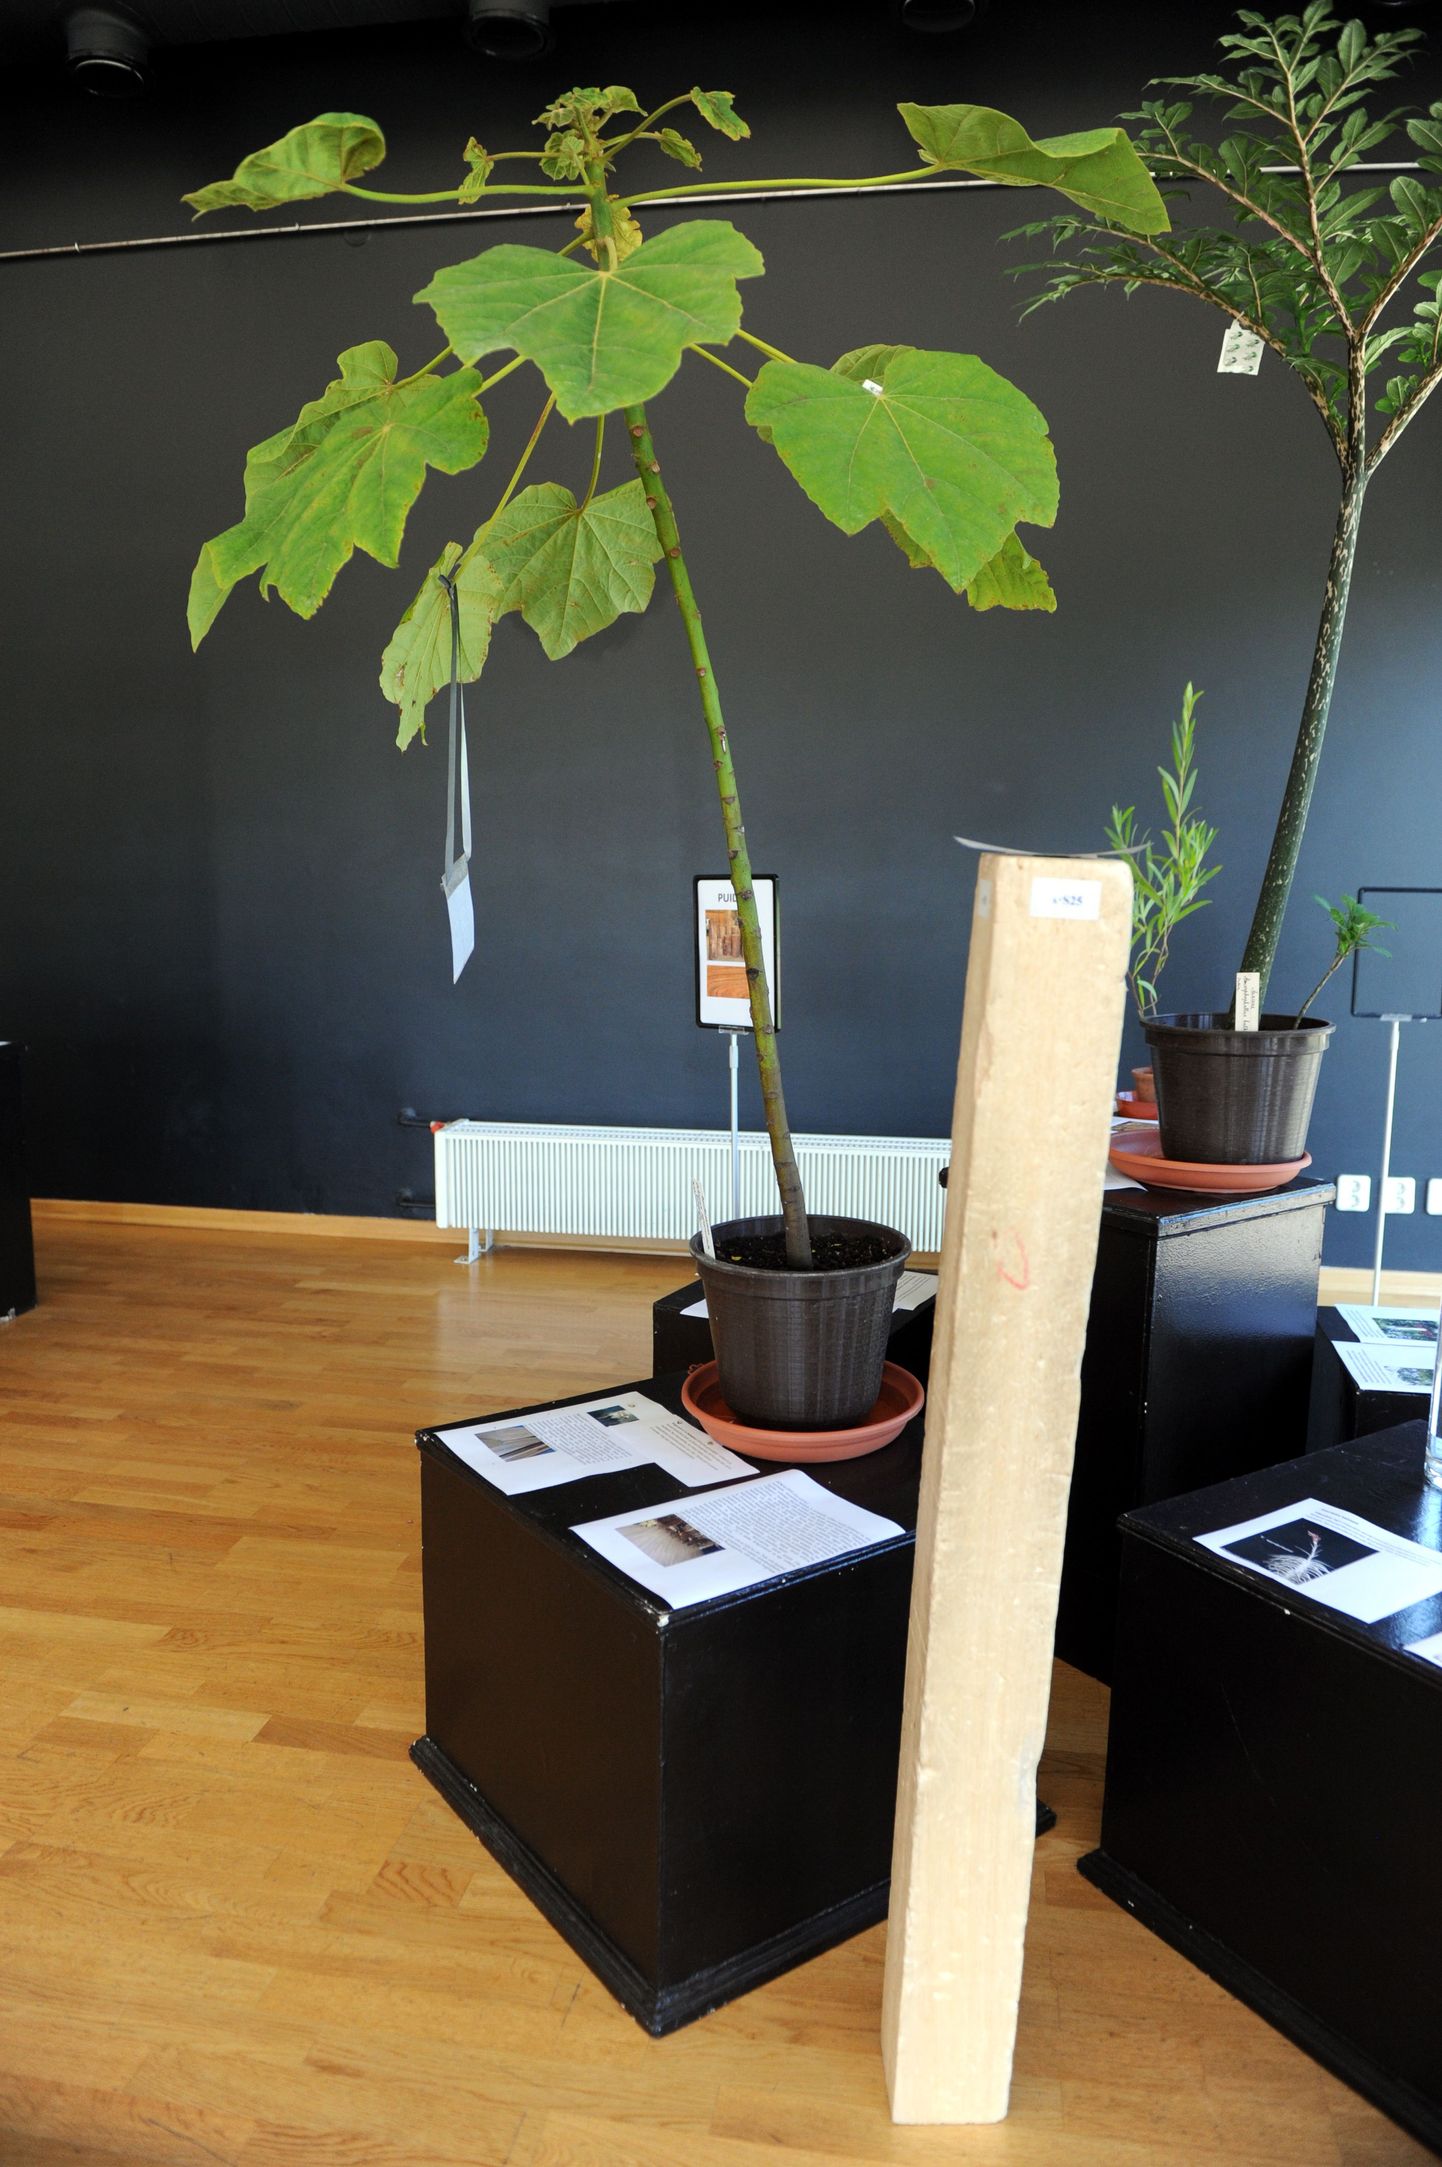 Taimerekordite näitus Tallinna botaanikaaias. Pildil balsapuu, mis on üks kergema puiduga puu.